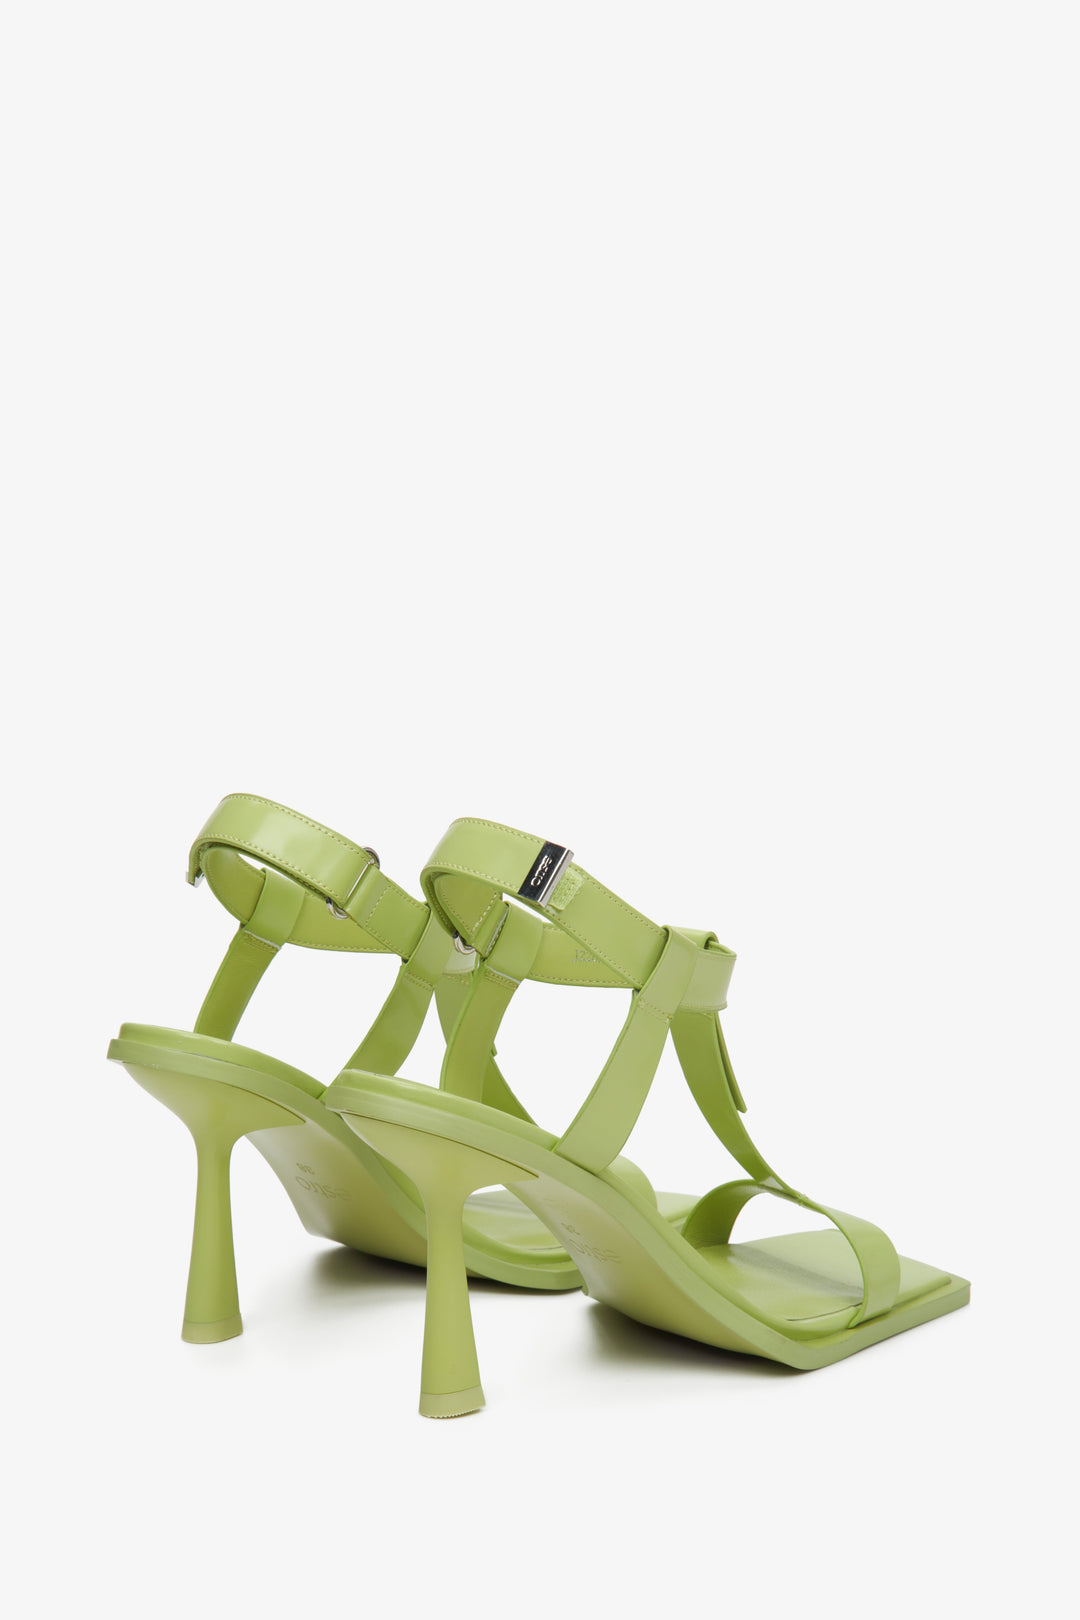 Light green women's heeled t-bar sandals, Estro brand.